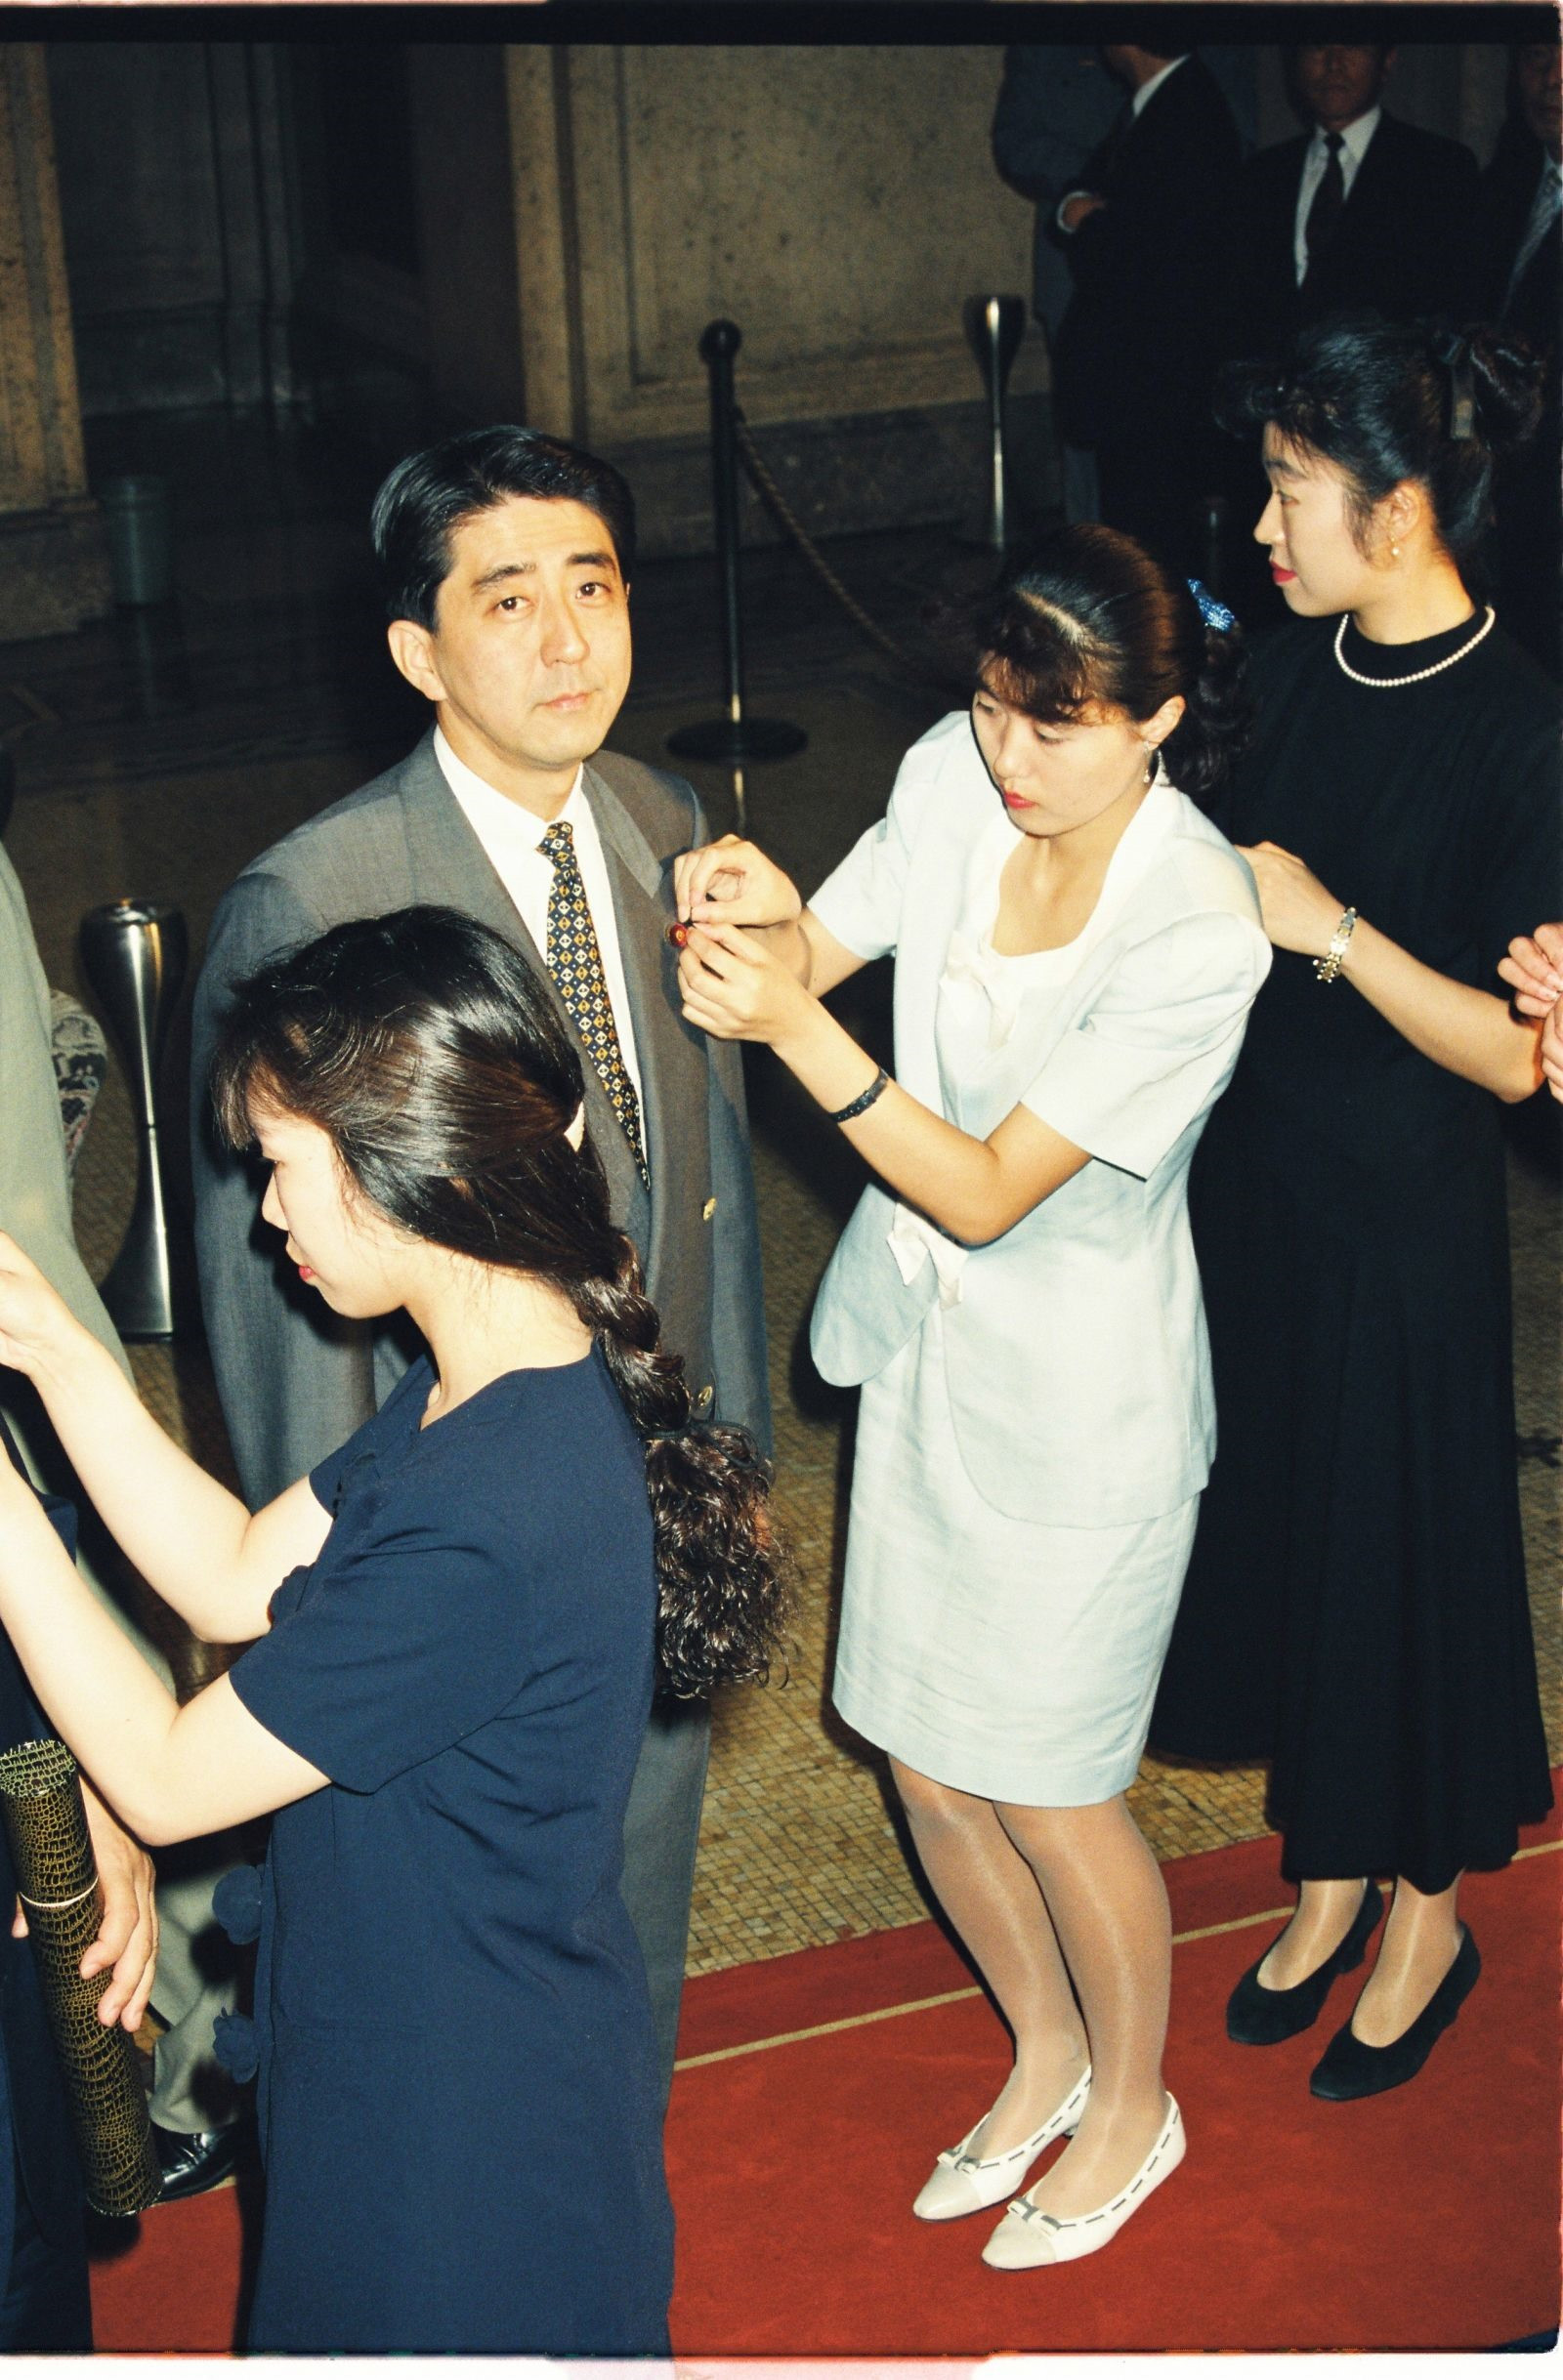 Ông Abe, một nghị sĩ mới được bầu, có ghim thành viên của mình được gắn khi ông tham dự phiên họp đầu tiên của quốc hội vào ngày 5 tháng 8 năm 1993. Ảnh: Gettyimages